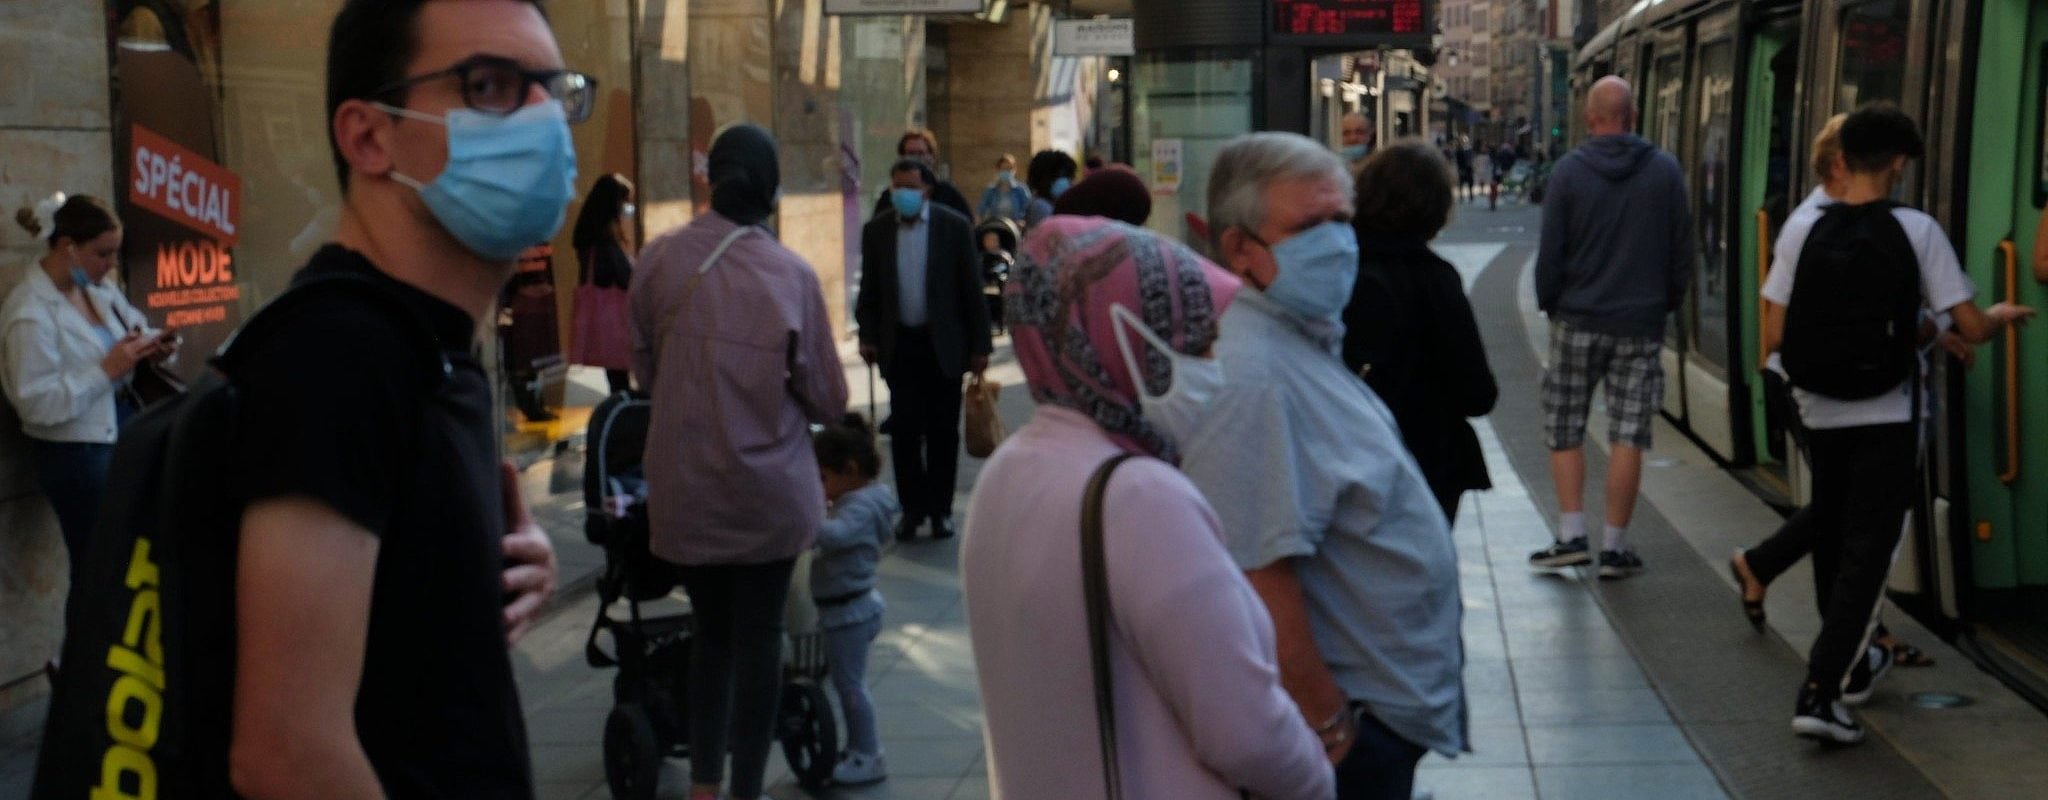 La préfecture prolonge le port du masque obligatoire en extérieur dans les « zones d’affluence »